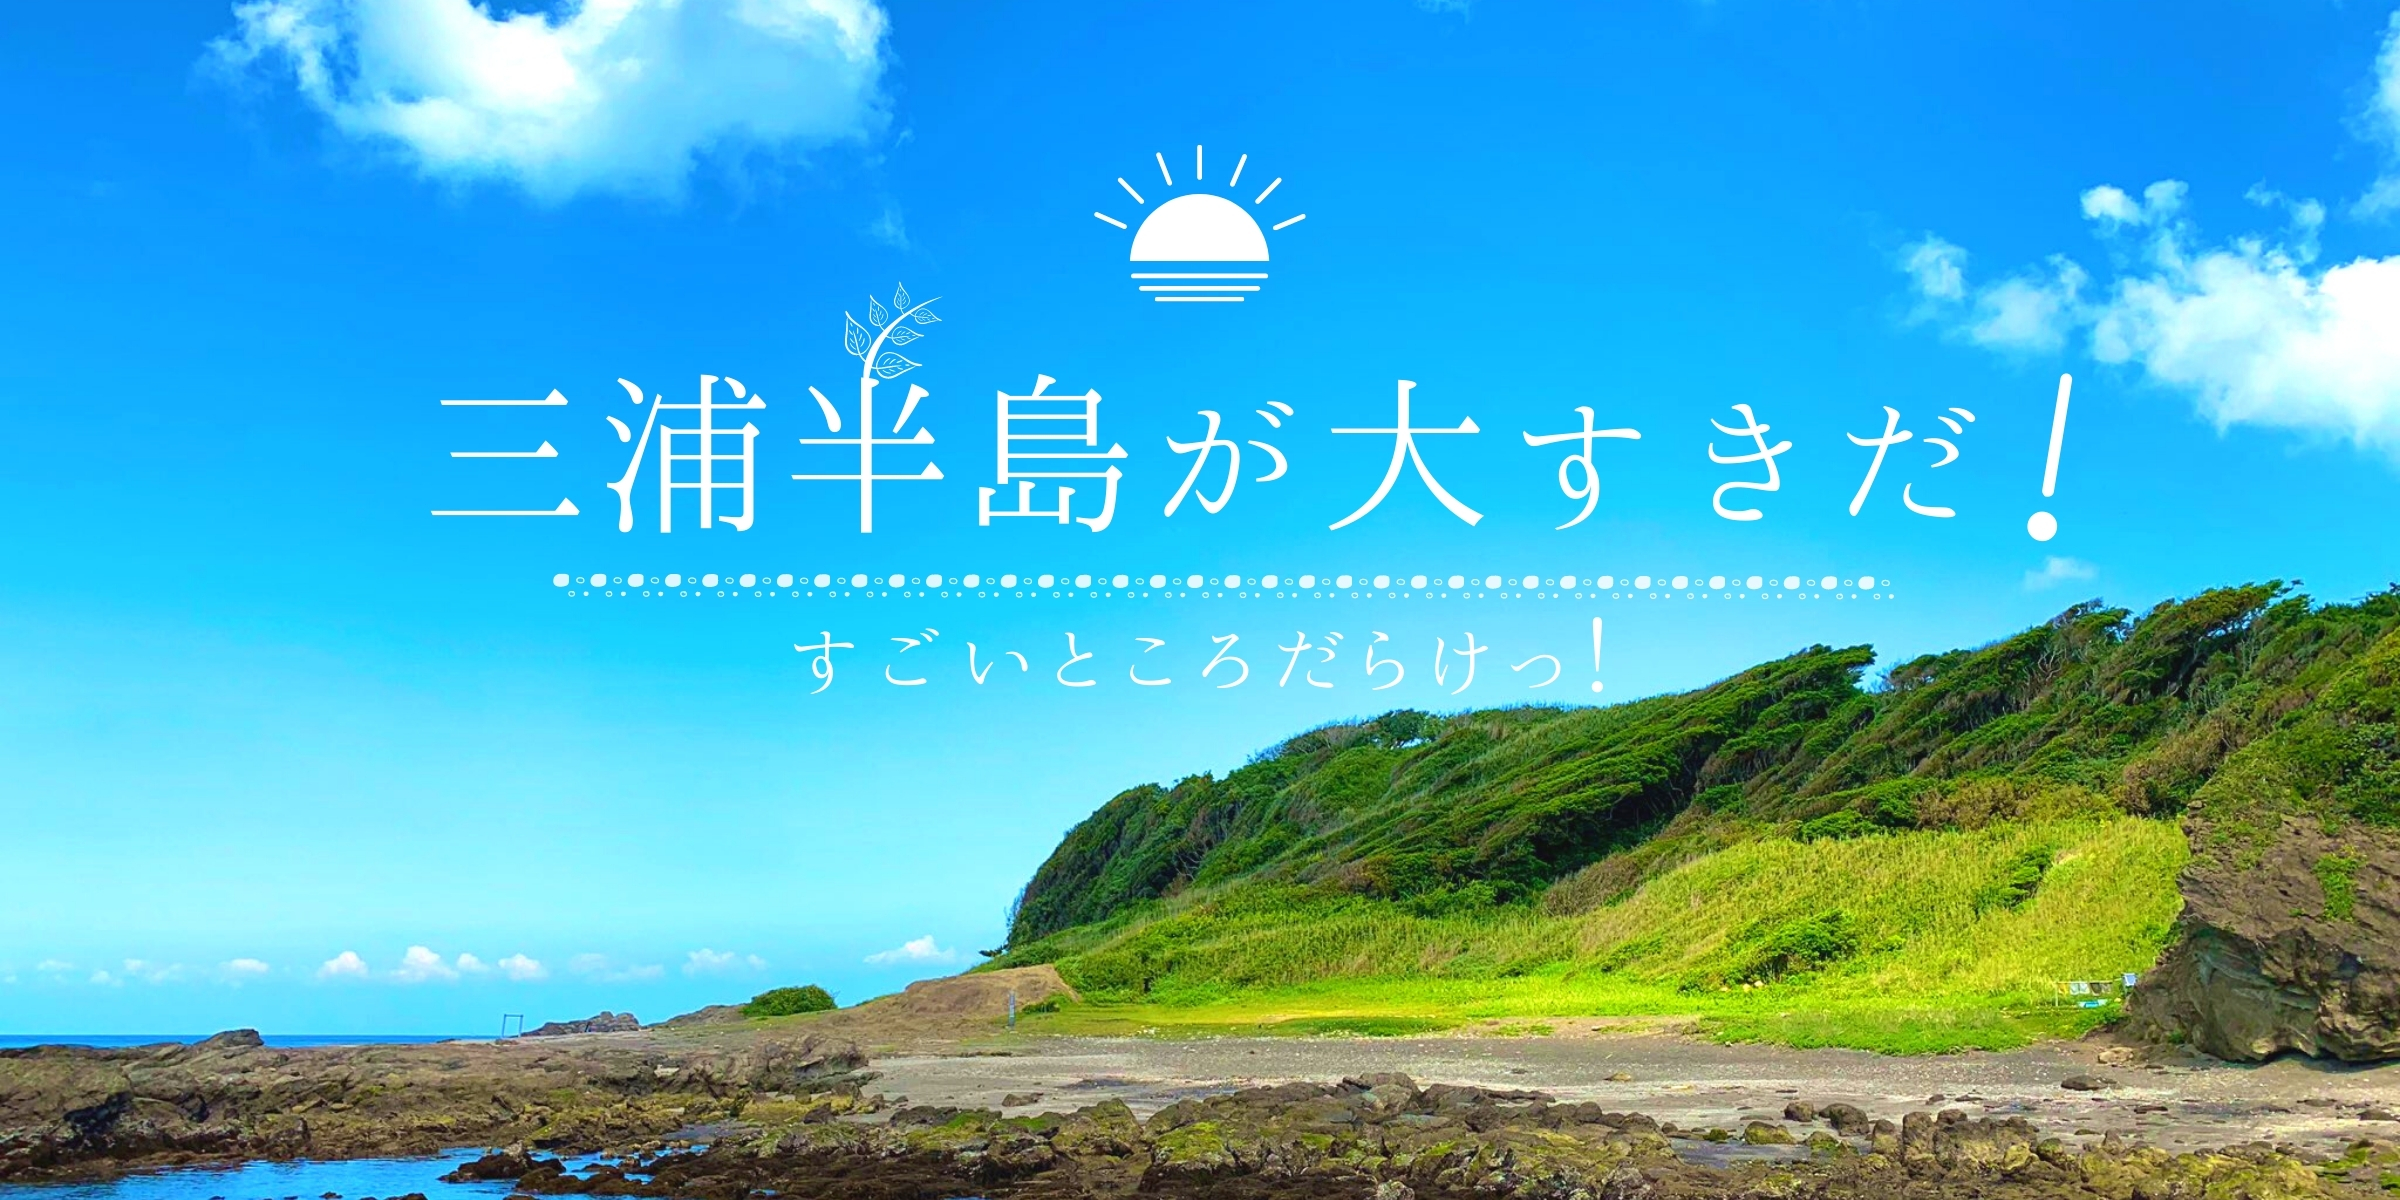 荒崎公園 入場無料のキレイな海の公園 荒崎海岸の見どころまとめ 湘南 三浦半島news